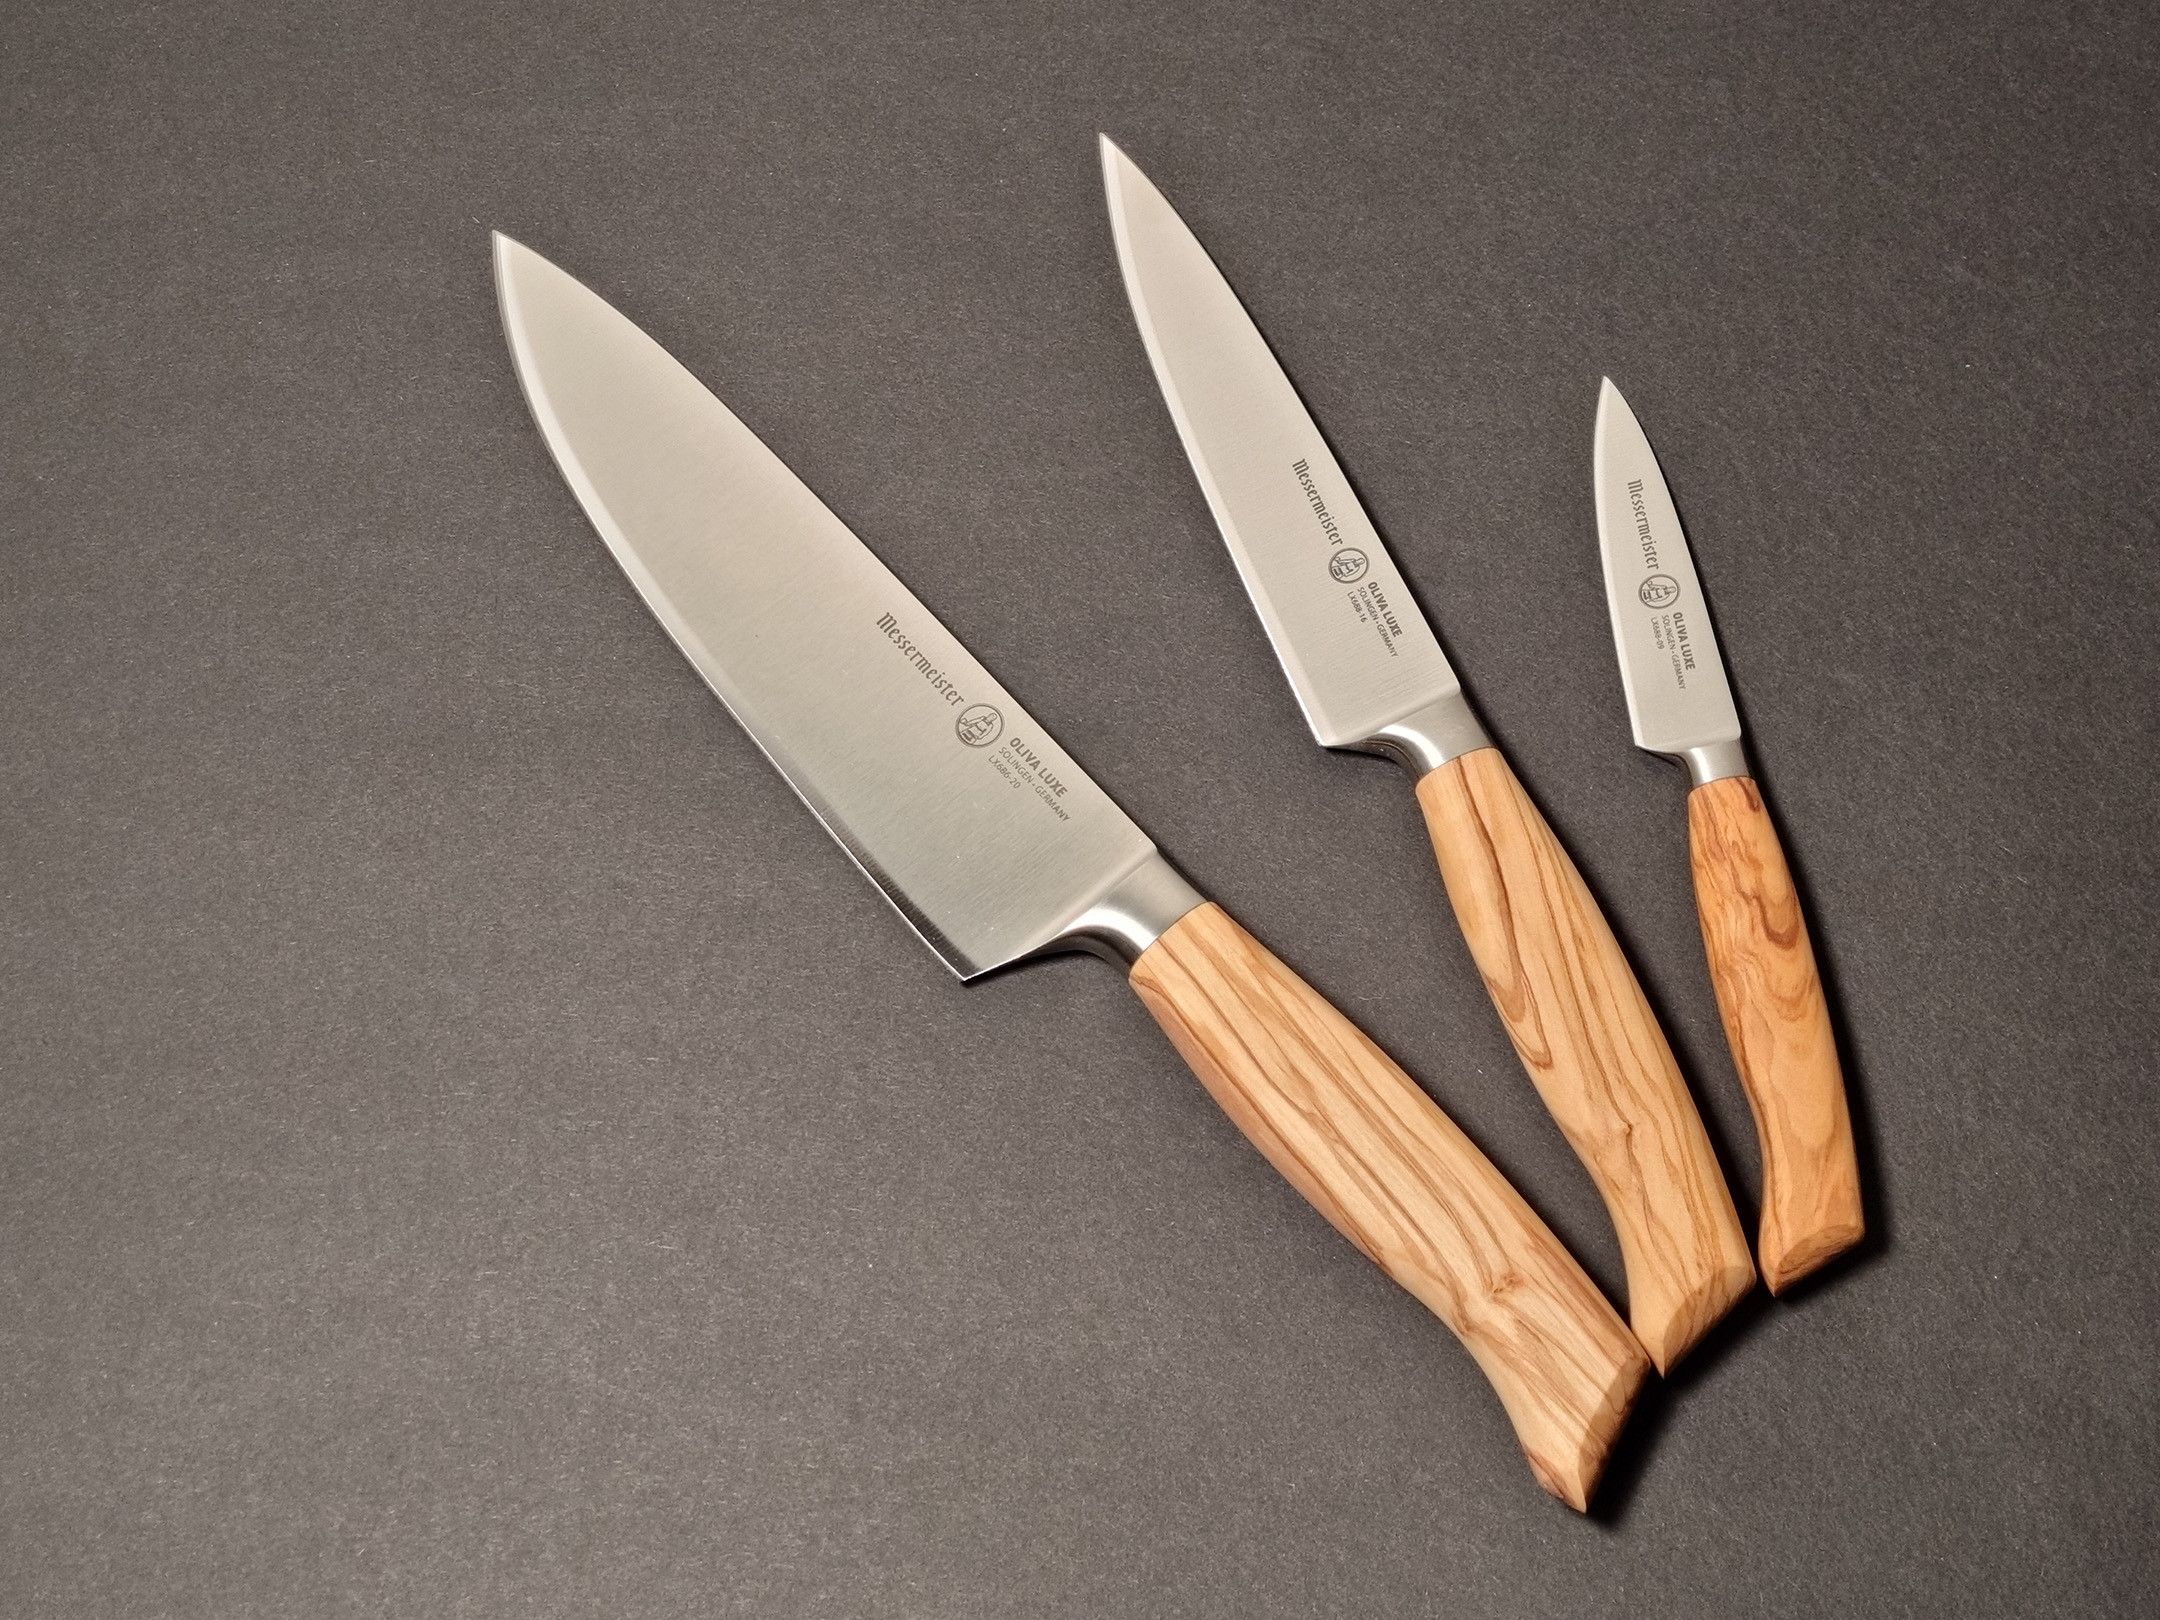 https://knivesstudio.com/208/messermeister-oliva-luxe-3-knives-set-for-starters.jpg